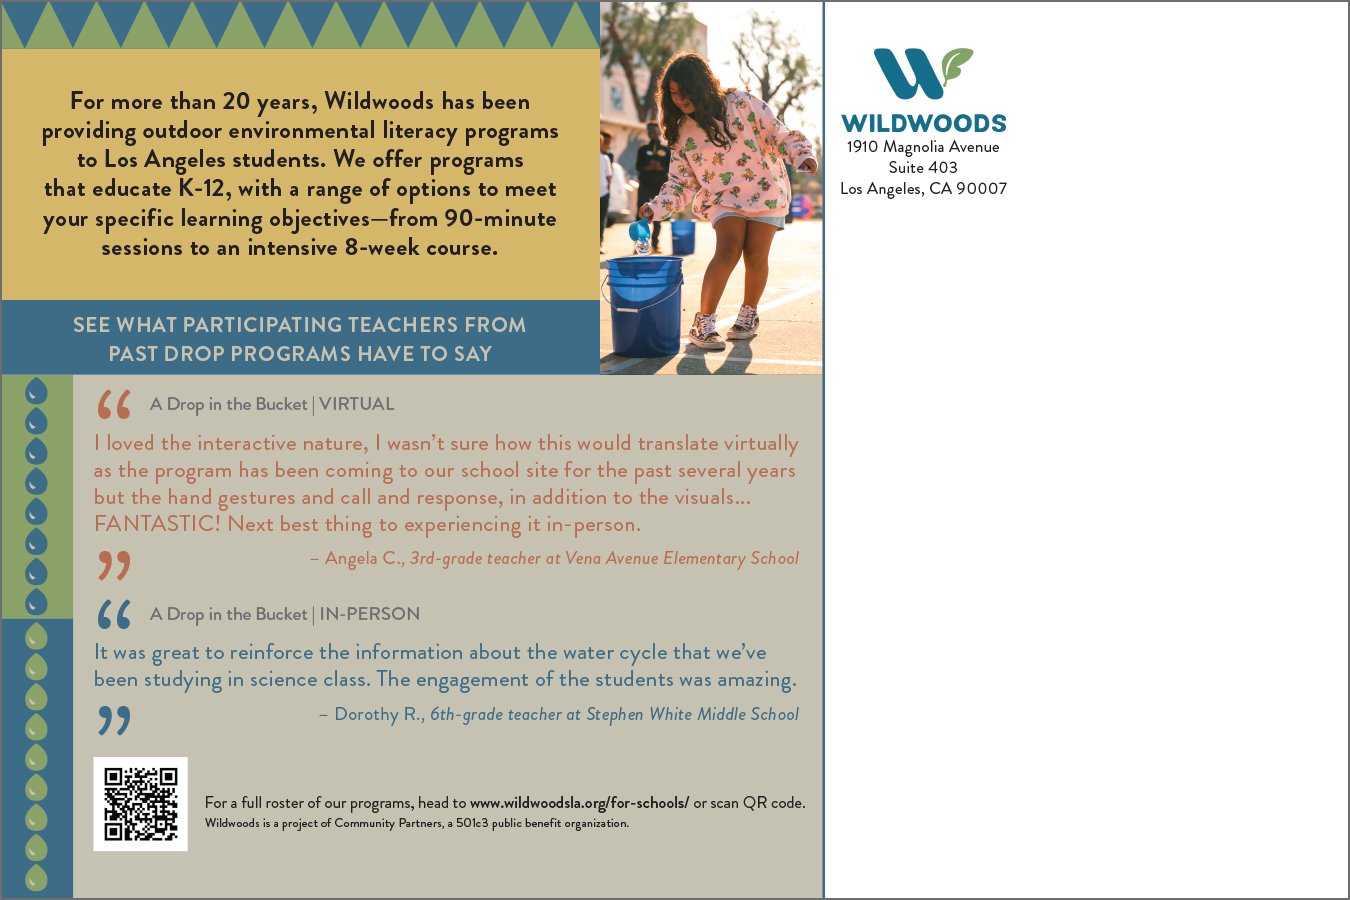  Wildwoods postcard mailer to local schools - address 